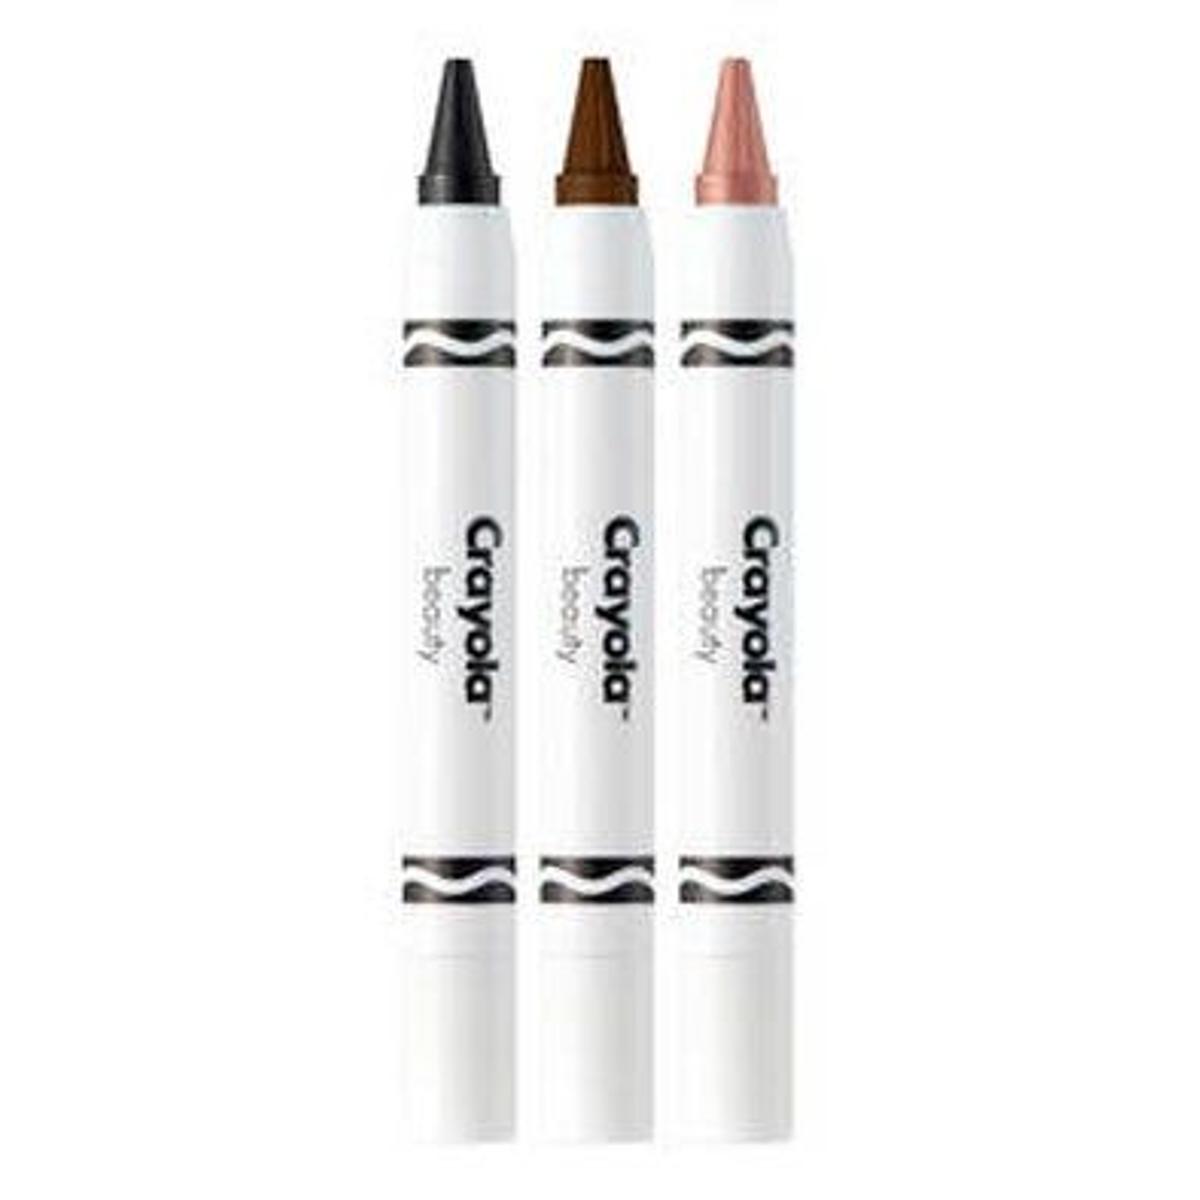 Crayons para los ojos, de Crayola